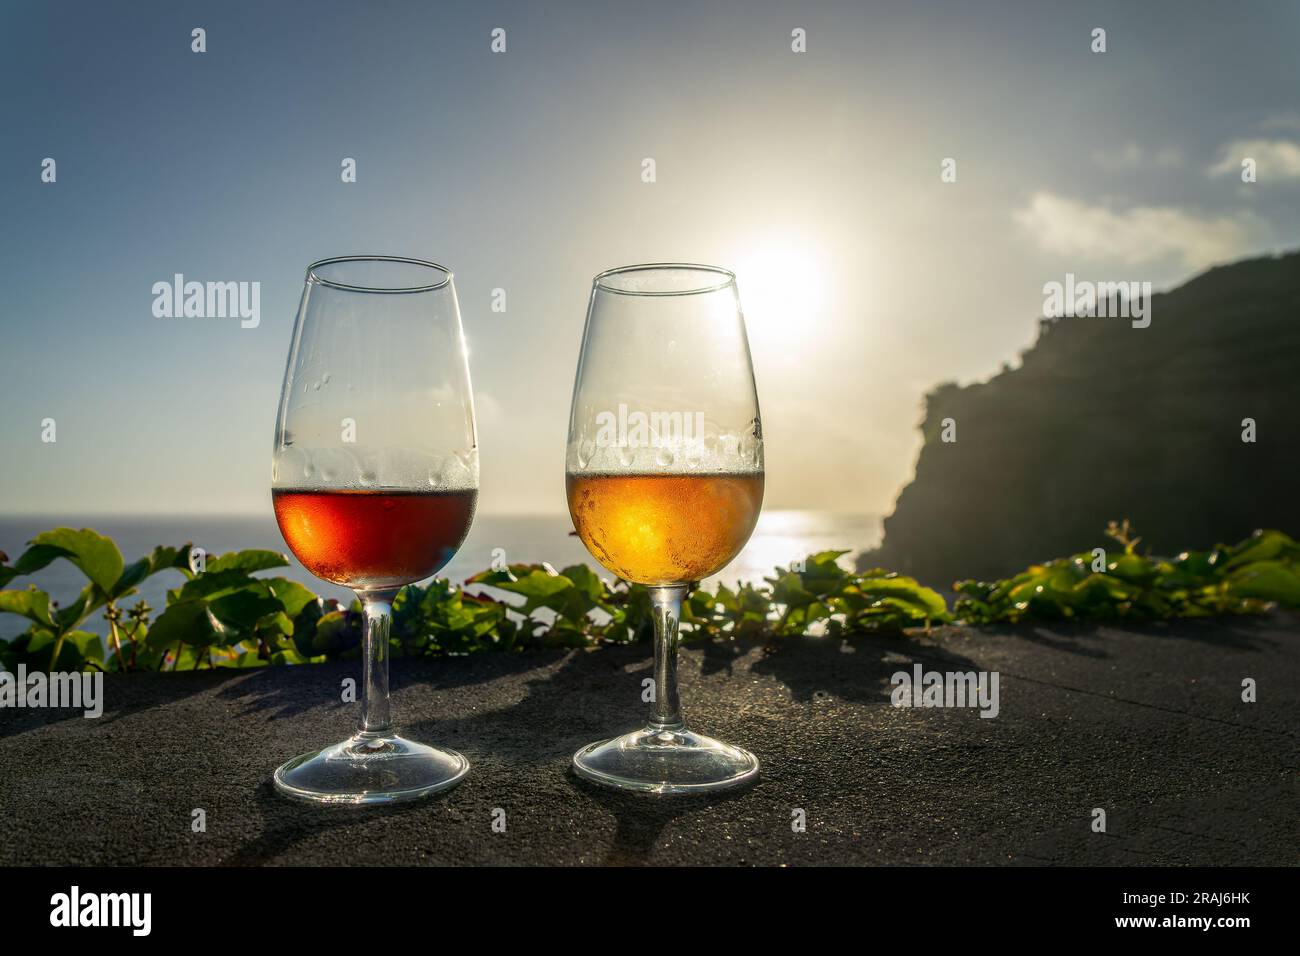 Zwei verschiedene Gläser Madeira-Weine bei Sonnenuntergang, Weinprobe, Insel Madeira, Portugal Stockfoto